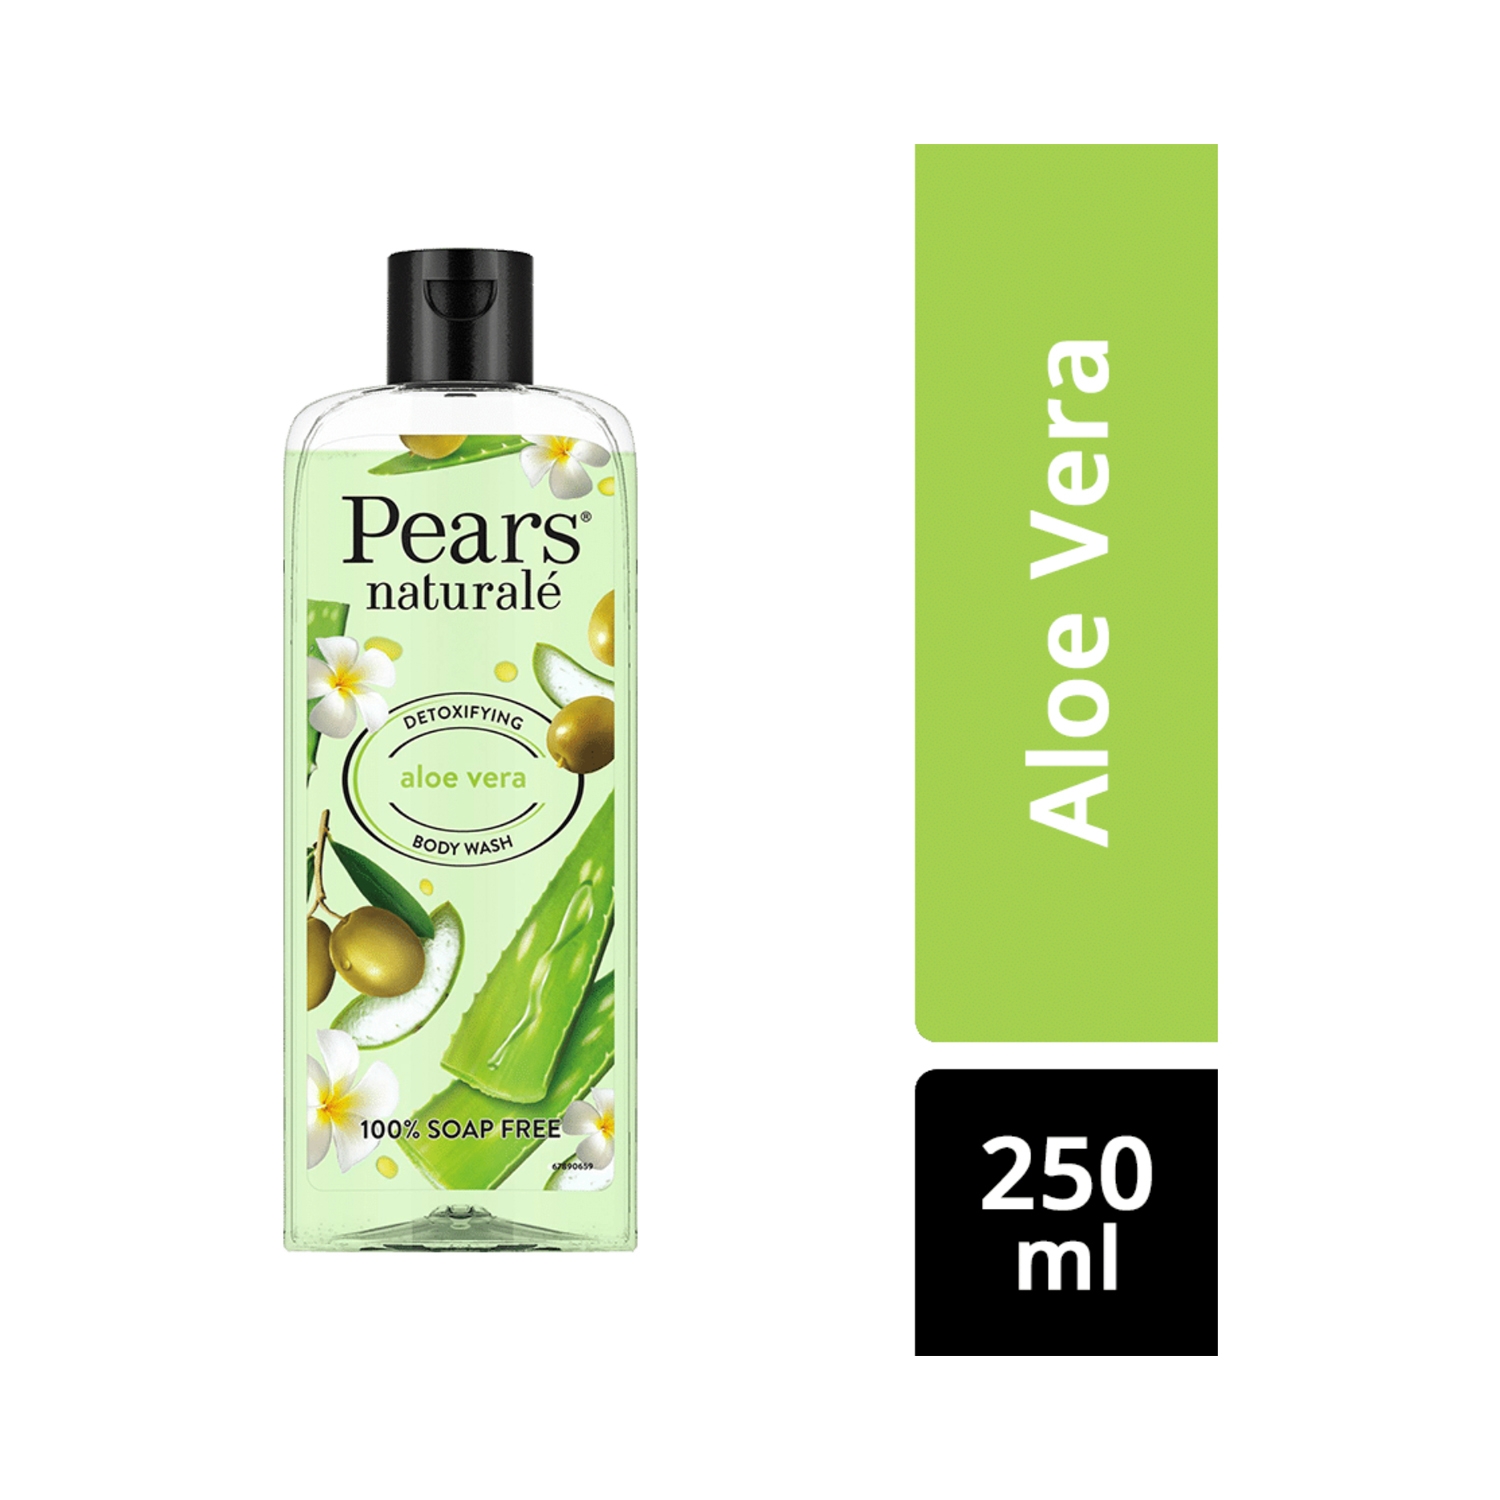 Pears | Pears Naturale Detoxifying Aloe Vera Body Wash - (250ml)